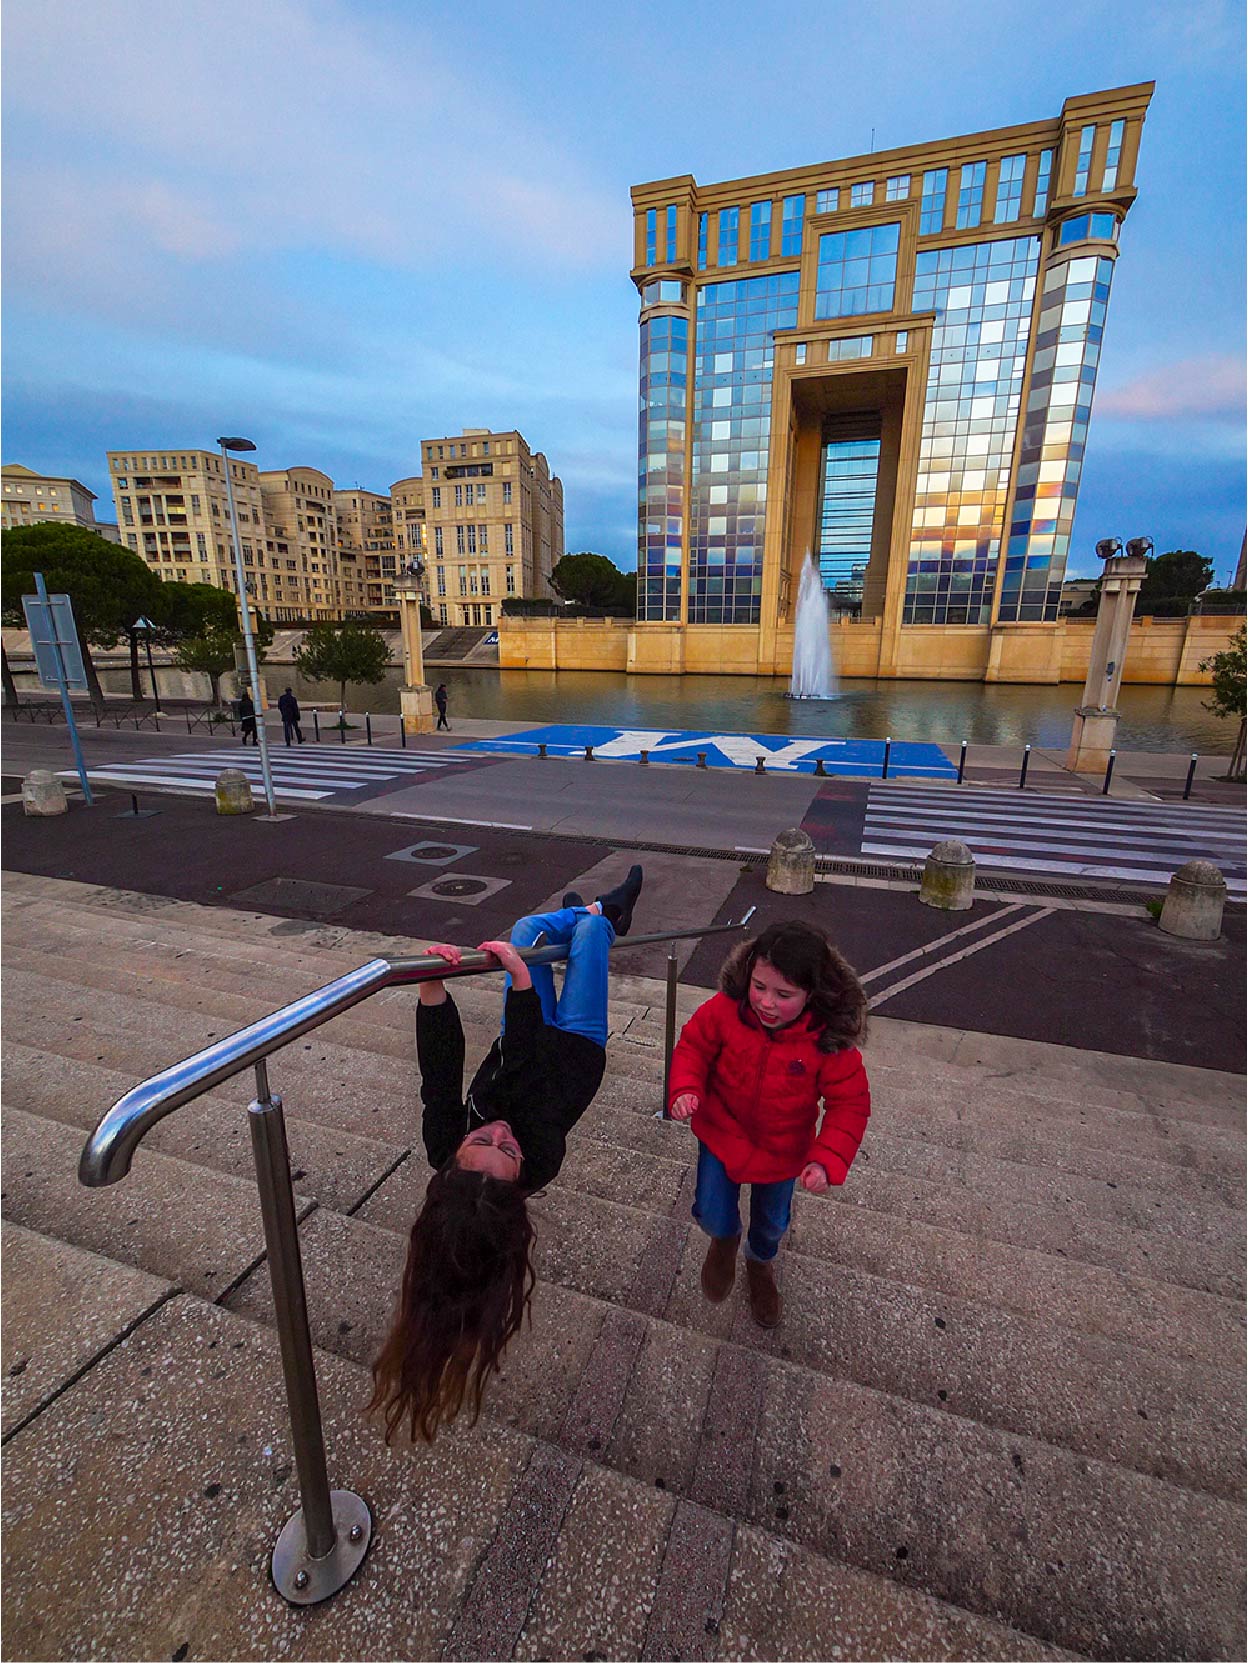 Foto von zwei spielenden Kindern vor dem Hotel de Région in Montpellier